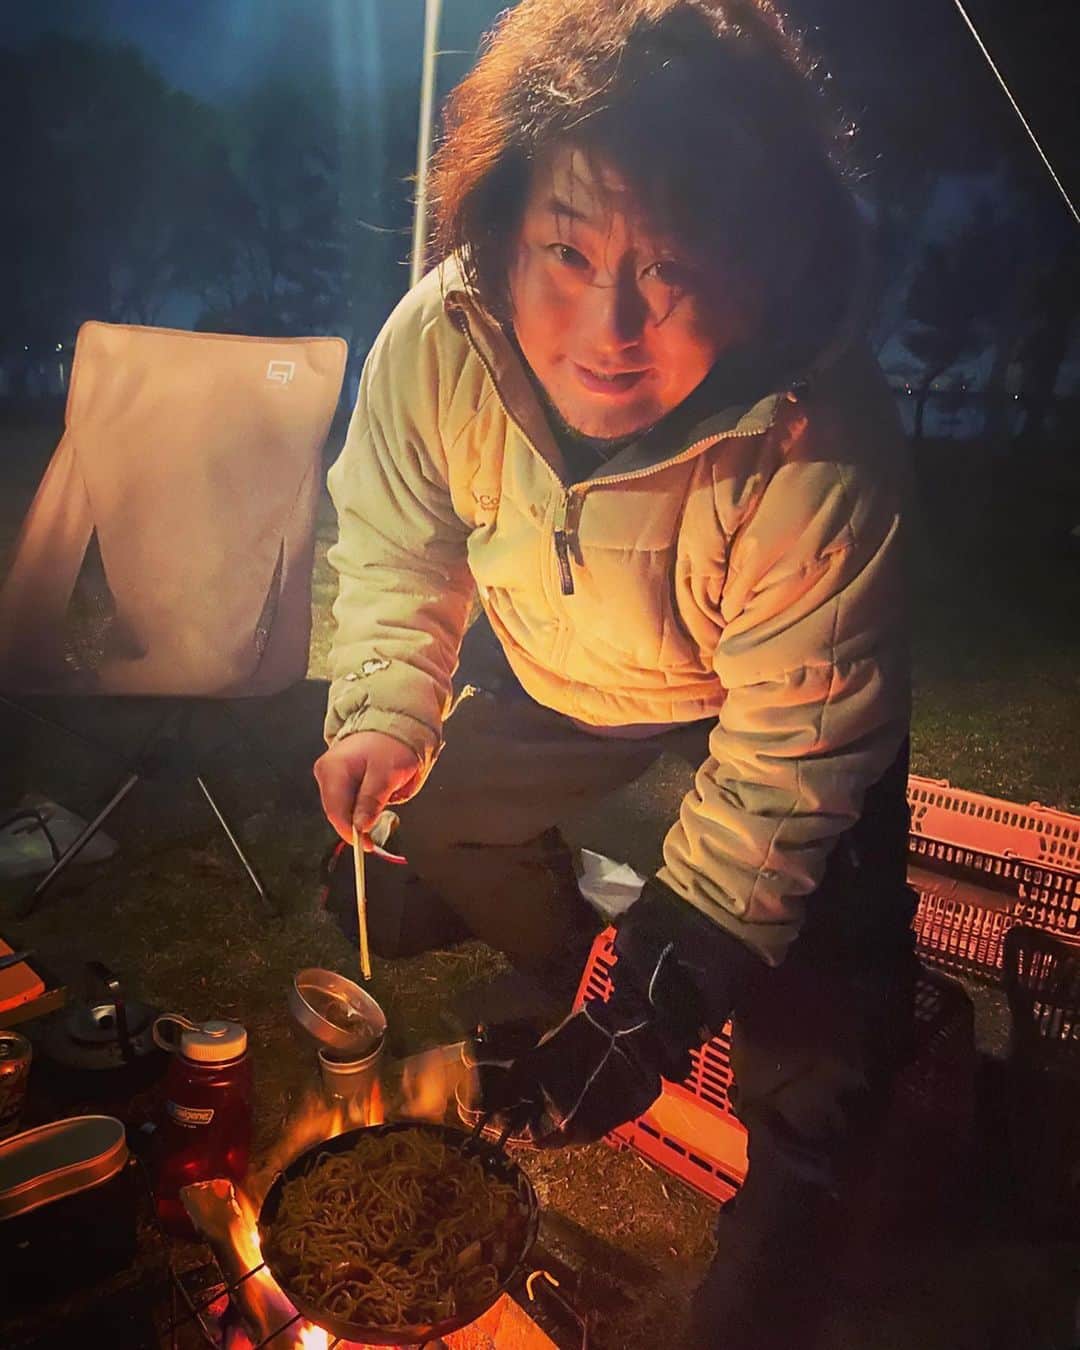 綾小路翔さんのインスタグラム写真 - (綾小路翔Instagram)「‪氣志團のメンバー白鳥松竹梅くんに誘ってもらい、初めての本格キャンプに参加した綾小路 翔。﻿ ﻿ 只今無事、東京に帰って参りました。﻿ ﻿ これまでは元々テントやバンガローがあるキャンプ場でしか経験がなかったのだけど、いやー今までと比較にならない程楽しかった。﻿ ﻿ 何から何まで優しく教えてくれた友人達に感謝。﻿ ﻿ みんなカッコよかった。‬﻿ ﻿ また行きたい。﻿ すぐ行きたい。﻿ ﻿ とりあえずスケジュールを調べよう。﻿ そして今回必要だと感じた最低限のものから揃えよう。﻿ ﻿ ①火を見るよりも明らかなこと。それは「何事も初体験は誰とするかが重要」だということ。﻿ ②優しくて頼もしき男・キャプテン松。﻿ ③木内シェフは音楽と同じで本当に何でも出来る。時々ミスしても音楽と同じでまったく表情を変えない。﻿ ④缶詰を焚き火で温めたらこんなに美味しくなるのか。あと健は飯盒でラーメン作ってた。次回やる。絶対やる。﻿ ⑤ニカケン兄貴からファイヤースターターレクチャーを受ける光くん。くべられたフェザースティックの中でやたら下手なのは綾小路 翔の処女作。﻿ ⑥最初に撮った記念写真。細かくみんなの位置を見て、一生懸命セッティングして、遂にタイマー撮影をスタートしたものの、己のポジションがわからず、完全に松の影に隠れるという体たらく。﻿ ⑦シェフの味付け若鶏もも焼きが超絶だった。餃子は60個をあっという間に食べ切ったので、次回は120個になる予定。あと鯖ご飯、泣くほど美味しかった。シェフすげえわ。そして福井県の食材すげえわ。﻿ ⑧マルシンハンバーグ on the ヨコザワテッパン。永遠の味を更に追求出来た。でも何だかんだ、やっぱケチャップだった。現在では「5種のチーズ入り」とか「ブラックペッパー」、更には「贅沢仕立て」なんてのもあるらしい。ホットサンドの具にもアリだと思った。﻿ ⑨深夜のフミさん特製・漢の豪快焼きそばも最高だった。今朝ストーリーに載せた、朝食のホットサンドもあと50個食べたい。いやしかし炭水化物とお肉のオンパレード。そして大量に買ったお酒はまさかの完飲。運動せネバダ。﻿ ⑩クノールのクリームオニオンポタージュ。こいつとフリーズドライの揚げ茄子味噌汁は、全世界どこに行く時も必須。日本に生まれて良かったよ。まったく。しかも外で飲むの…く・せ・に・な・る。﻿ ﻿ #キャンプ﻿ #松キャン﻿ #グルキャン﻿ #白鳥松竹梅（キャンパーネーム：まがりん）﻿ #工藤文孝（キャンパーネーム：フミさん）﻿ #二階堂腱ヂ（キャンパーネーム：ガンちゃん）﻿ #木内健（キャンパーネーム：シェフ）﻿ #早乙女光（キャンパーネーム：カブ）﻿ #綾小路翔（キャンパーネーム：ぬるキャン△）﻿ #初キャンに持っていたもの﻿ #アーミーナイフ﻿ #ミリタリーシュラフ﻿ #ヨコザワテッパン﻿ #ポータブル発電機﻿ #しまりんマグカップ 等﻿ #大体は緊急災害時用に揃えたもの﻿ #気合い入れて買ったチェアとかカトラリーの類は一切忘れてくる始末志摩リン始末リン﻿ #何というか團長らしいしセレクトも個性があって良いね﻿ #と少し戸惑いながらも微笑んでくれる心優しき仲間たち﻿ #というわけで一からやり直そうと﻿ #現在テントやらタープやらで悩み中﻿ #キャンパーの皆様色々教えてね﻿ #光くんは俺と同時デビューだったのに﻿ #カッコいいアイテムいっぱい持ってたしやたら詳しかった﻿ #この日の為にギアとまつわる情報と確かな知識をコツコツと集めたり自宅で練習したりしていたらしい﻿ #ちょっと悔しい俺﻿ #ああもう今からでもまた行きたいよ﻿」3月13日 20時45分 - showayanocozey